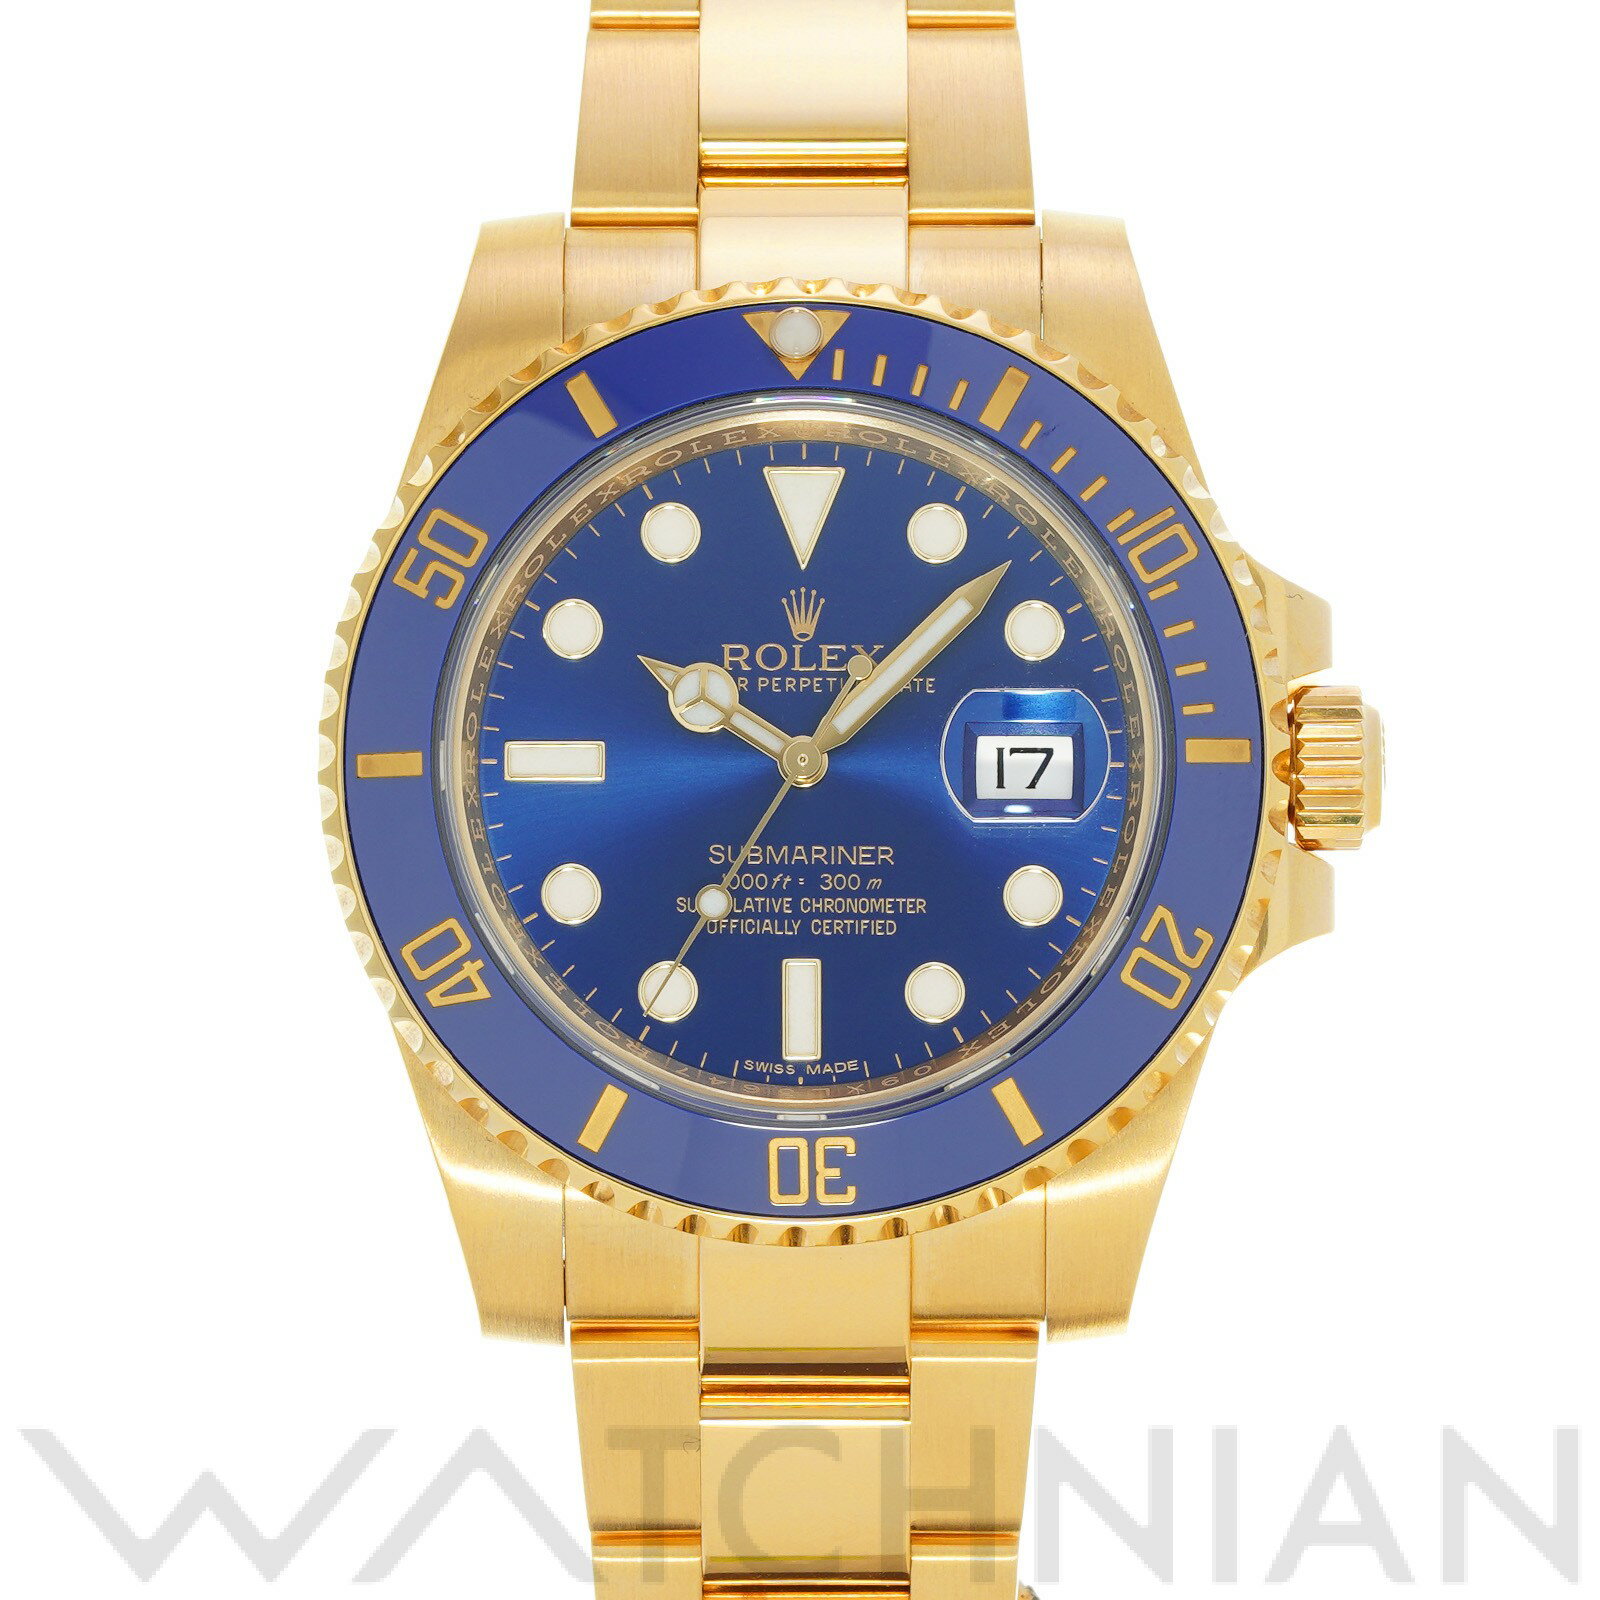 【中古】 ロレックス ROLEX サブマリーナ デイト 116618LB ランダムシリアル ブルー メンズ 腕時計 青 ロレックス腕時計 ブランド 時計 高級腕時計